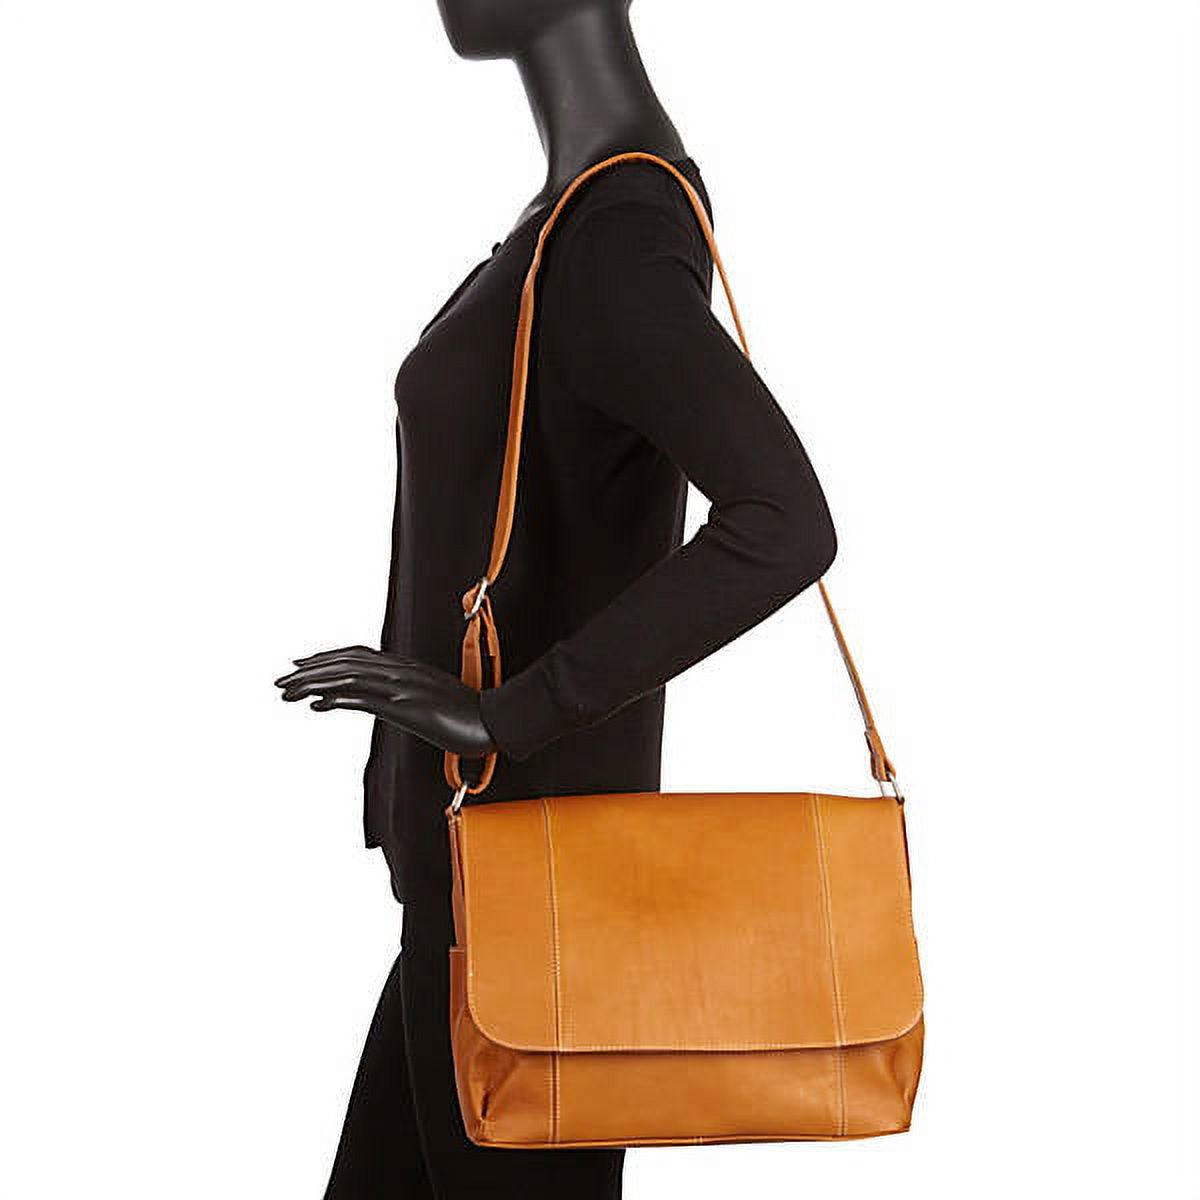 Le Donne Leather Flap Over Shoulder Bag LD-5004 - image 4 of 4